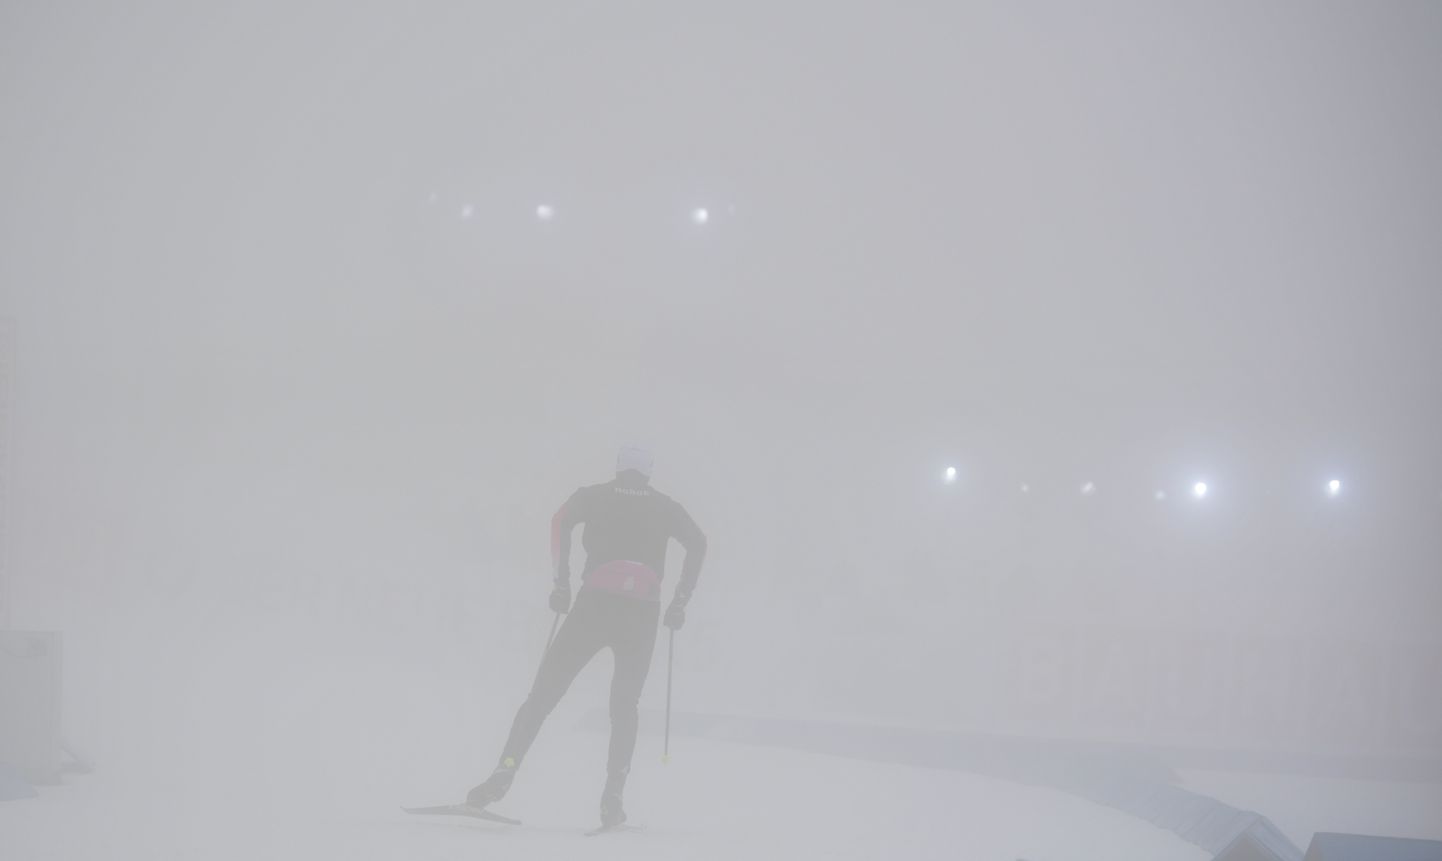 Из-за сильного тумана на трассе в Поклюке не было видно ни мишеней, ни лыжни. Гонку в итоге перенесли на четверг, шестое декабря.